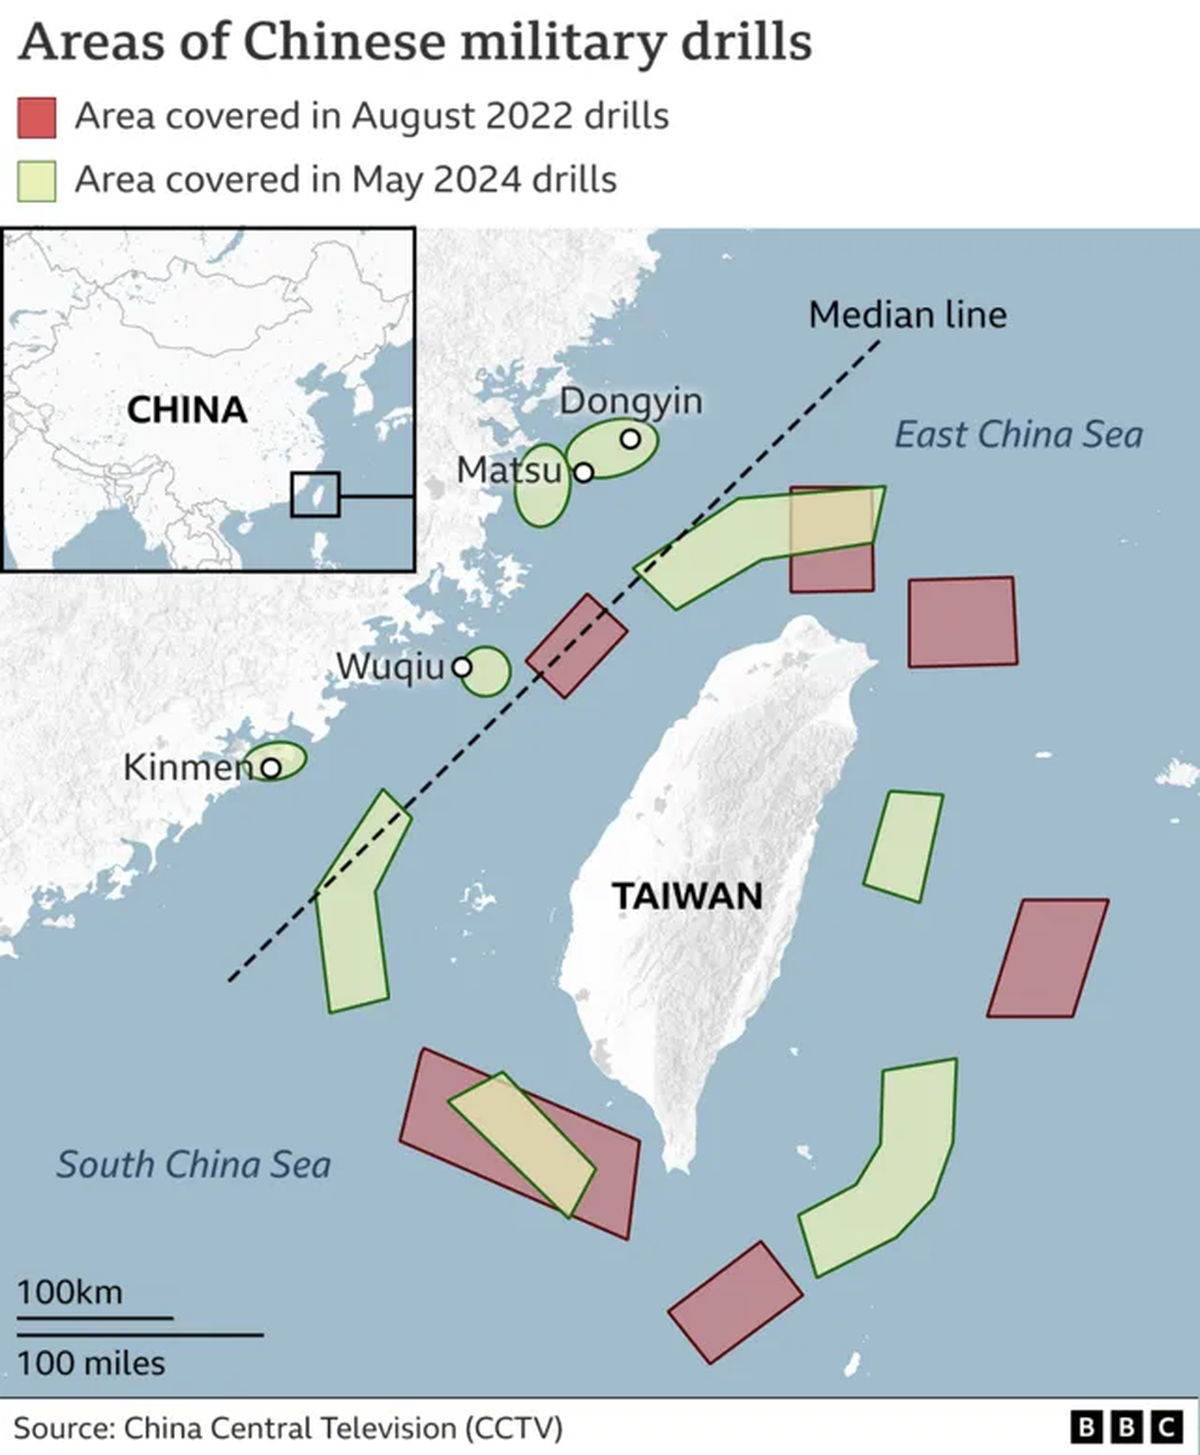 &Aacute;reas de despliegue militar de China cerca de Taiw&aacute;n (amarillo -2022- y rojo actualmente)